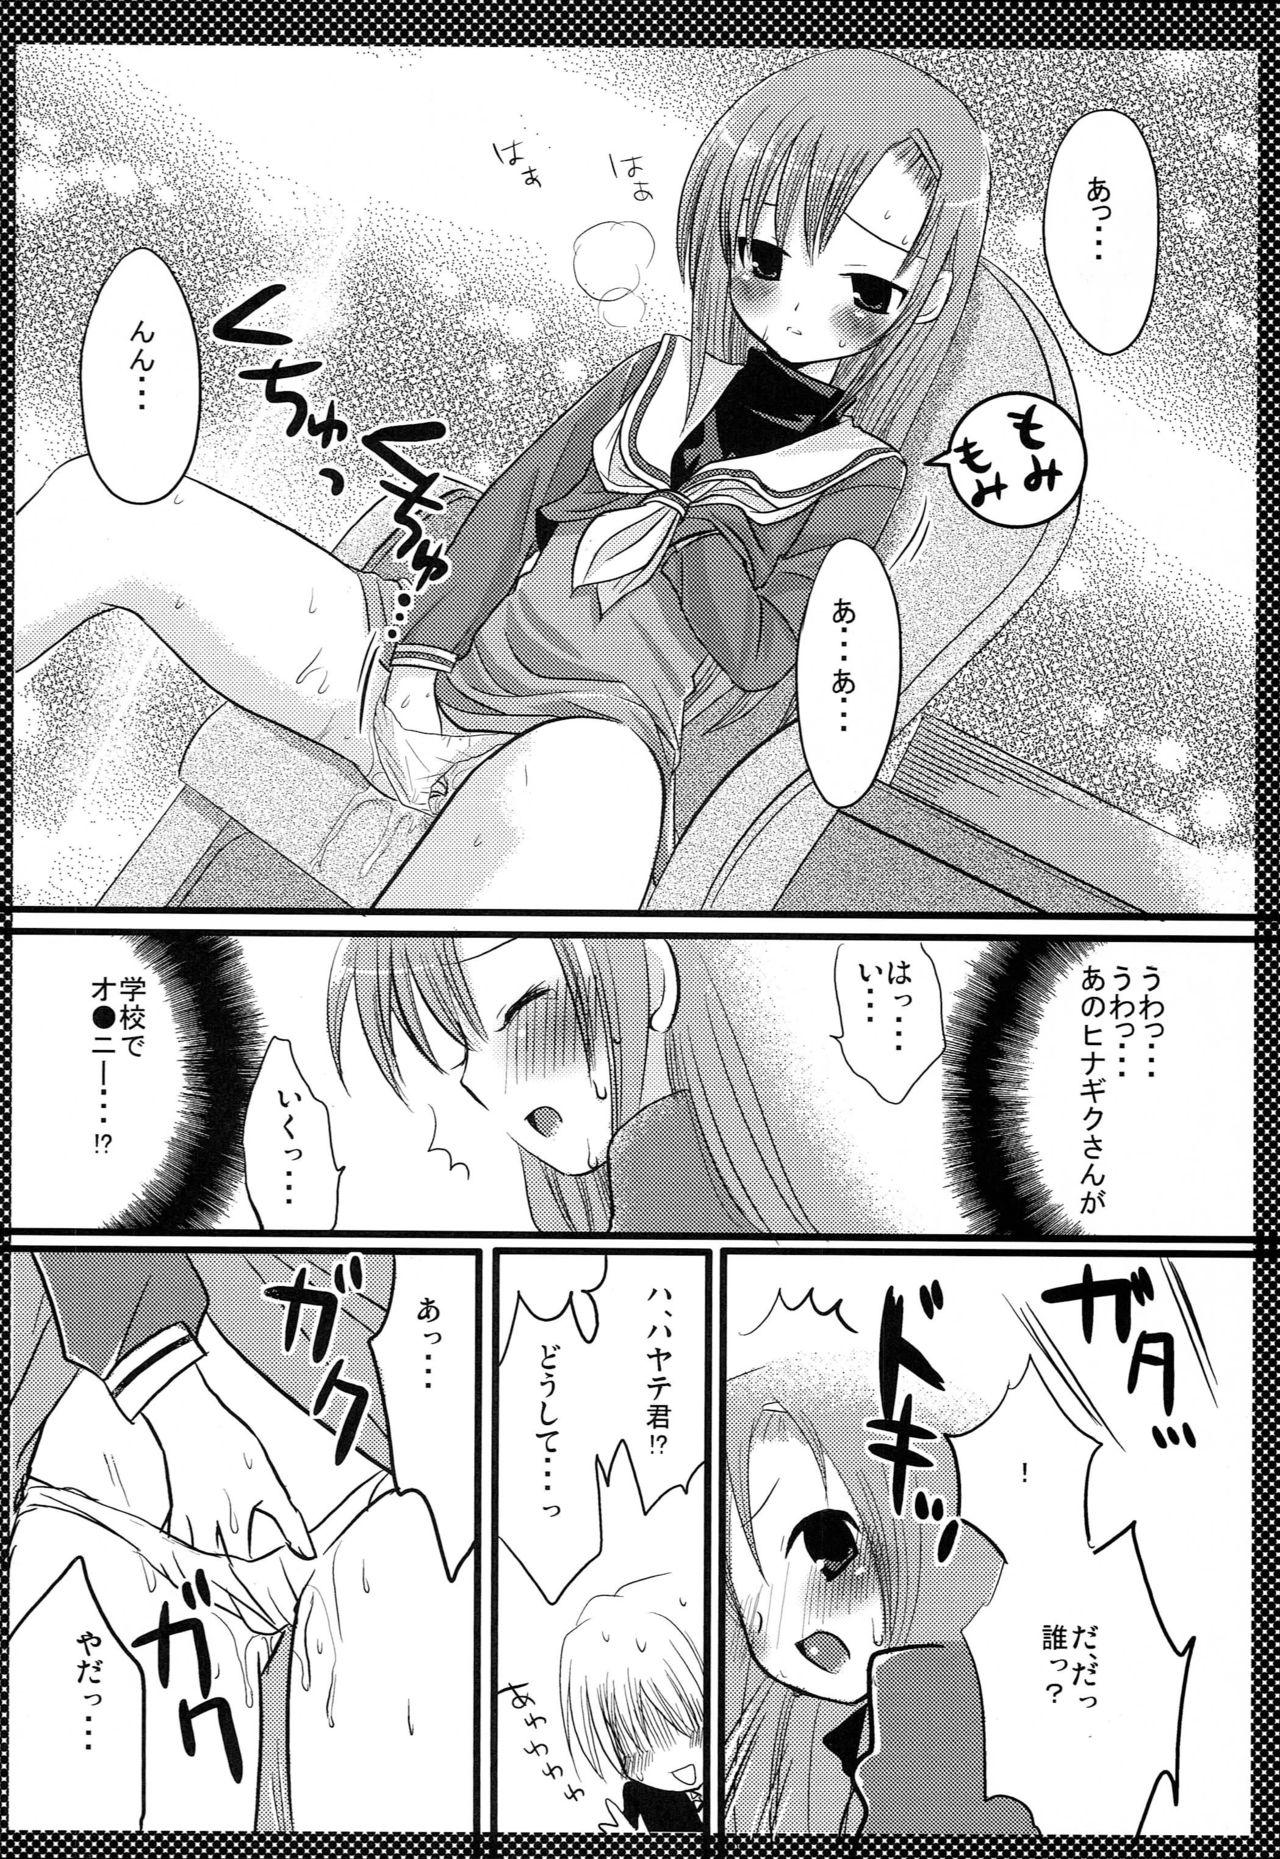 Uncut Hinagiku no Himitsu - Hayate no gotoku Nena - Page 5